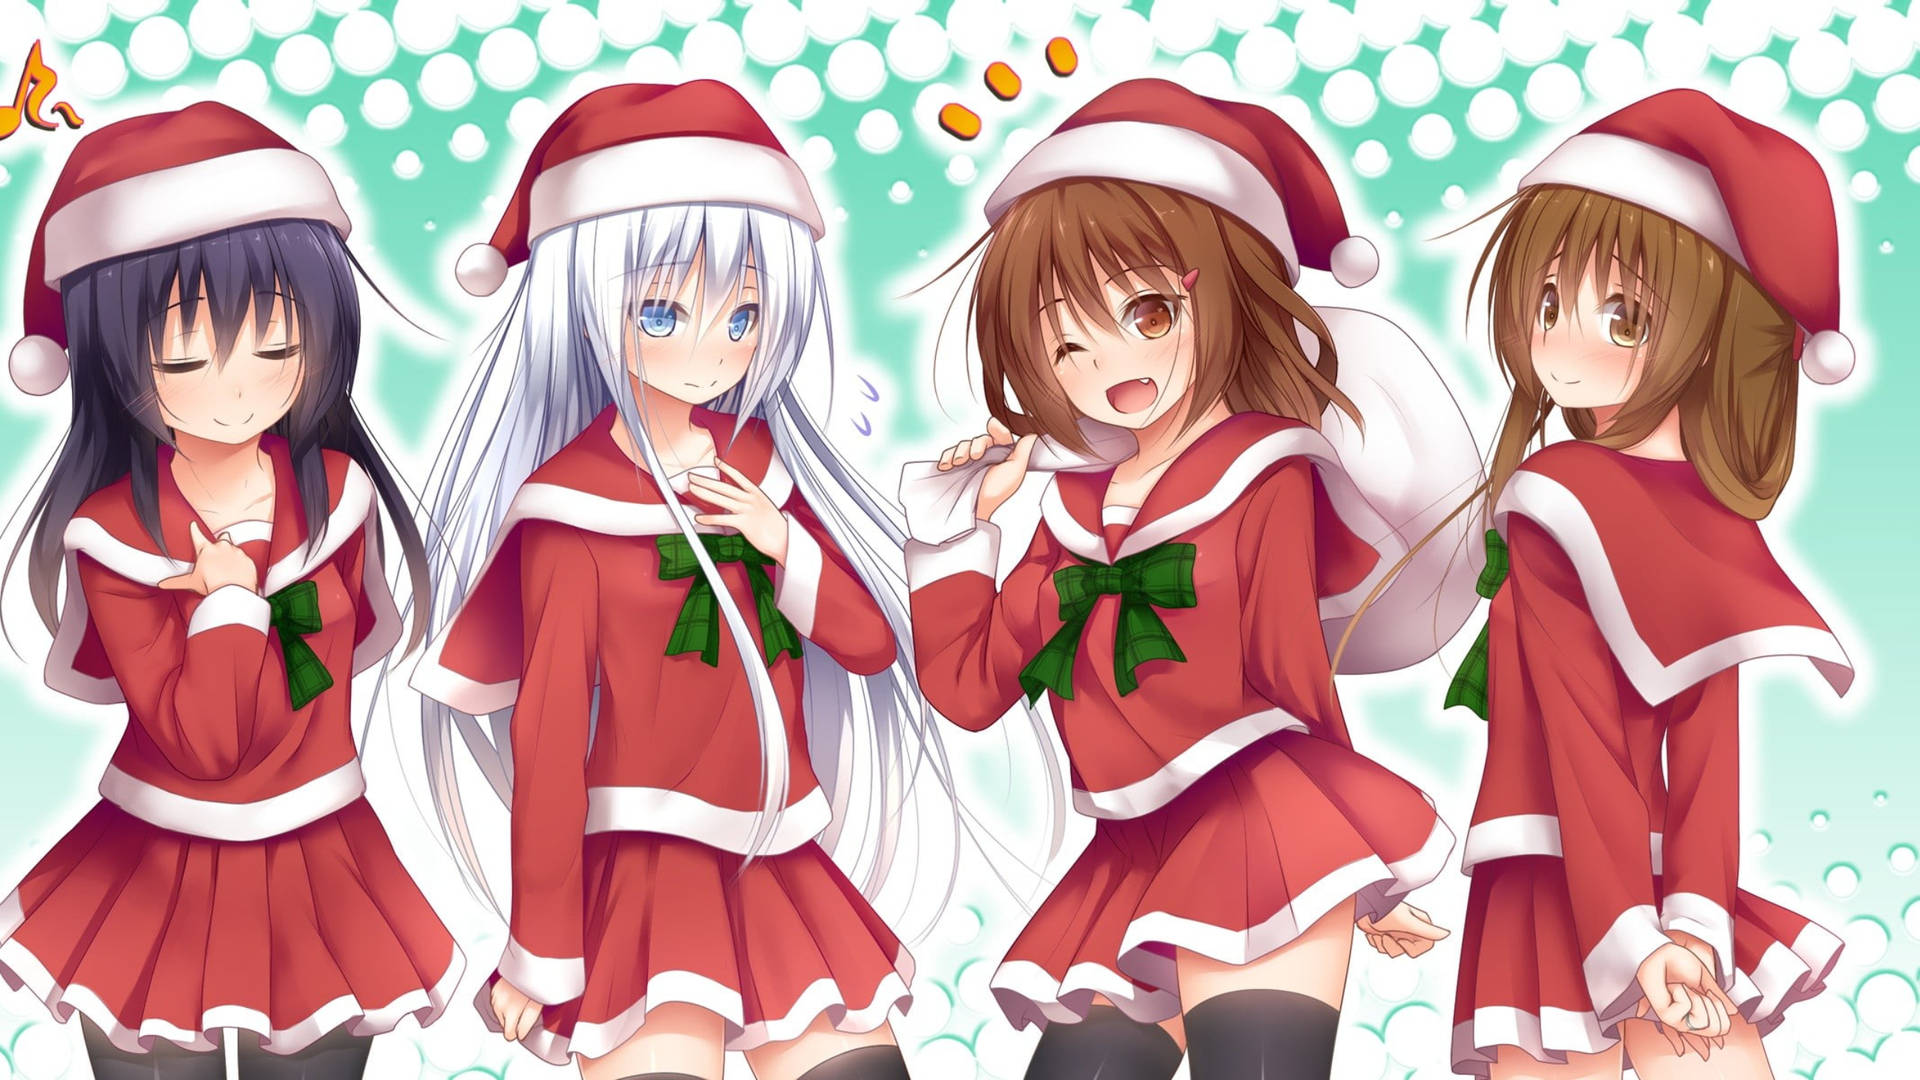 Download Girl With Christmas Uniform Anime Christmas Wallpaper | Wallpapers .com